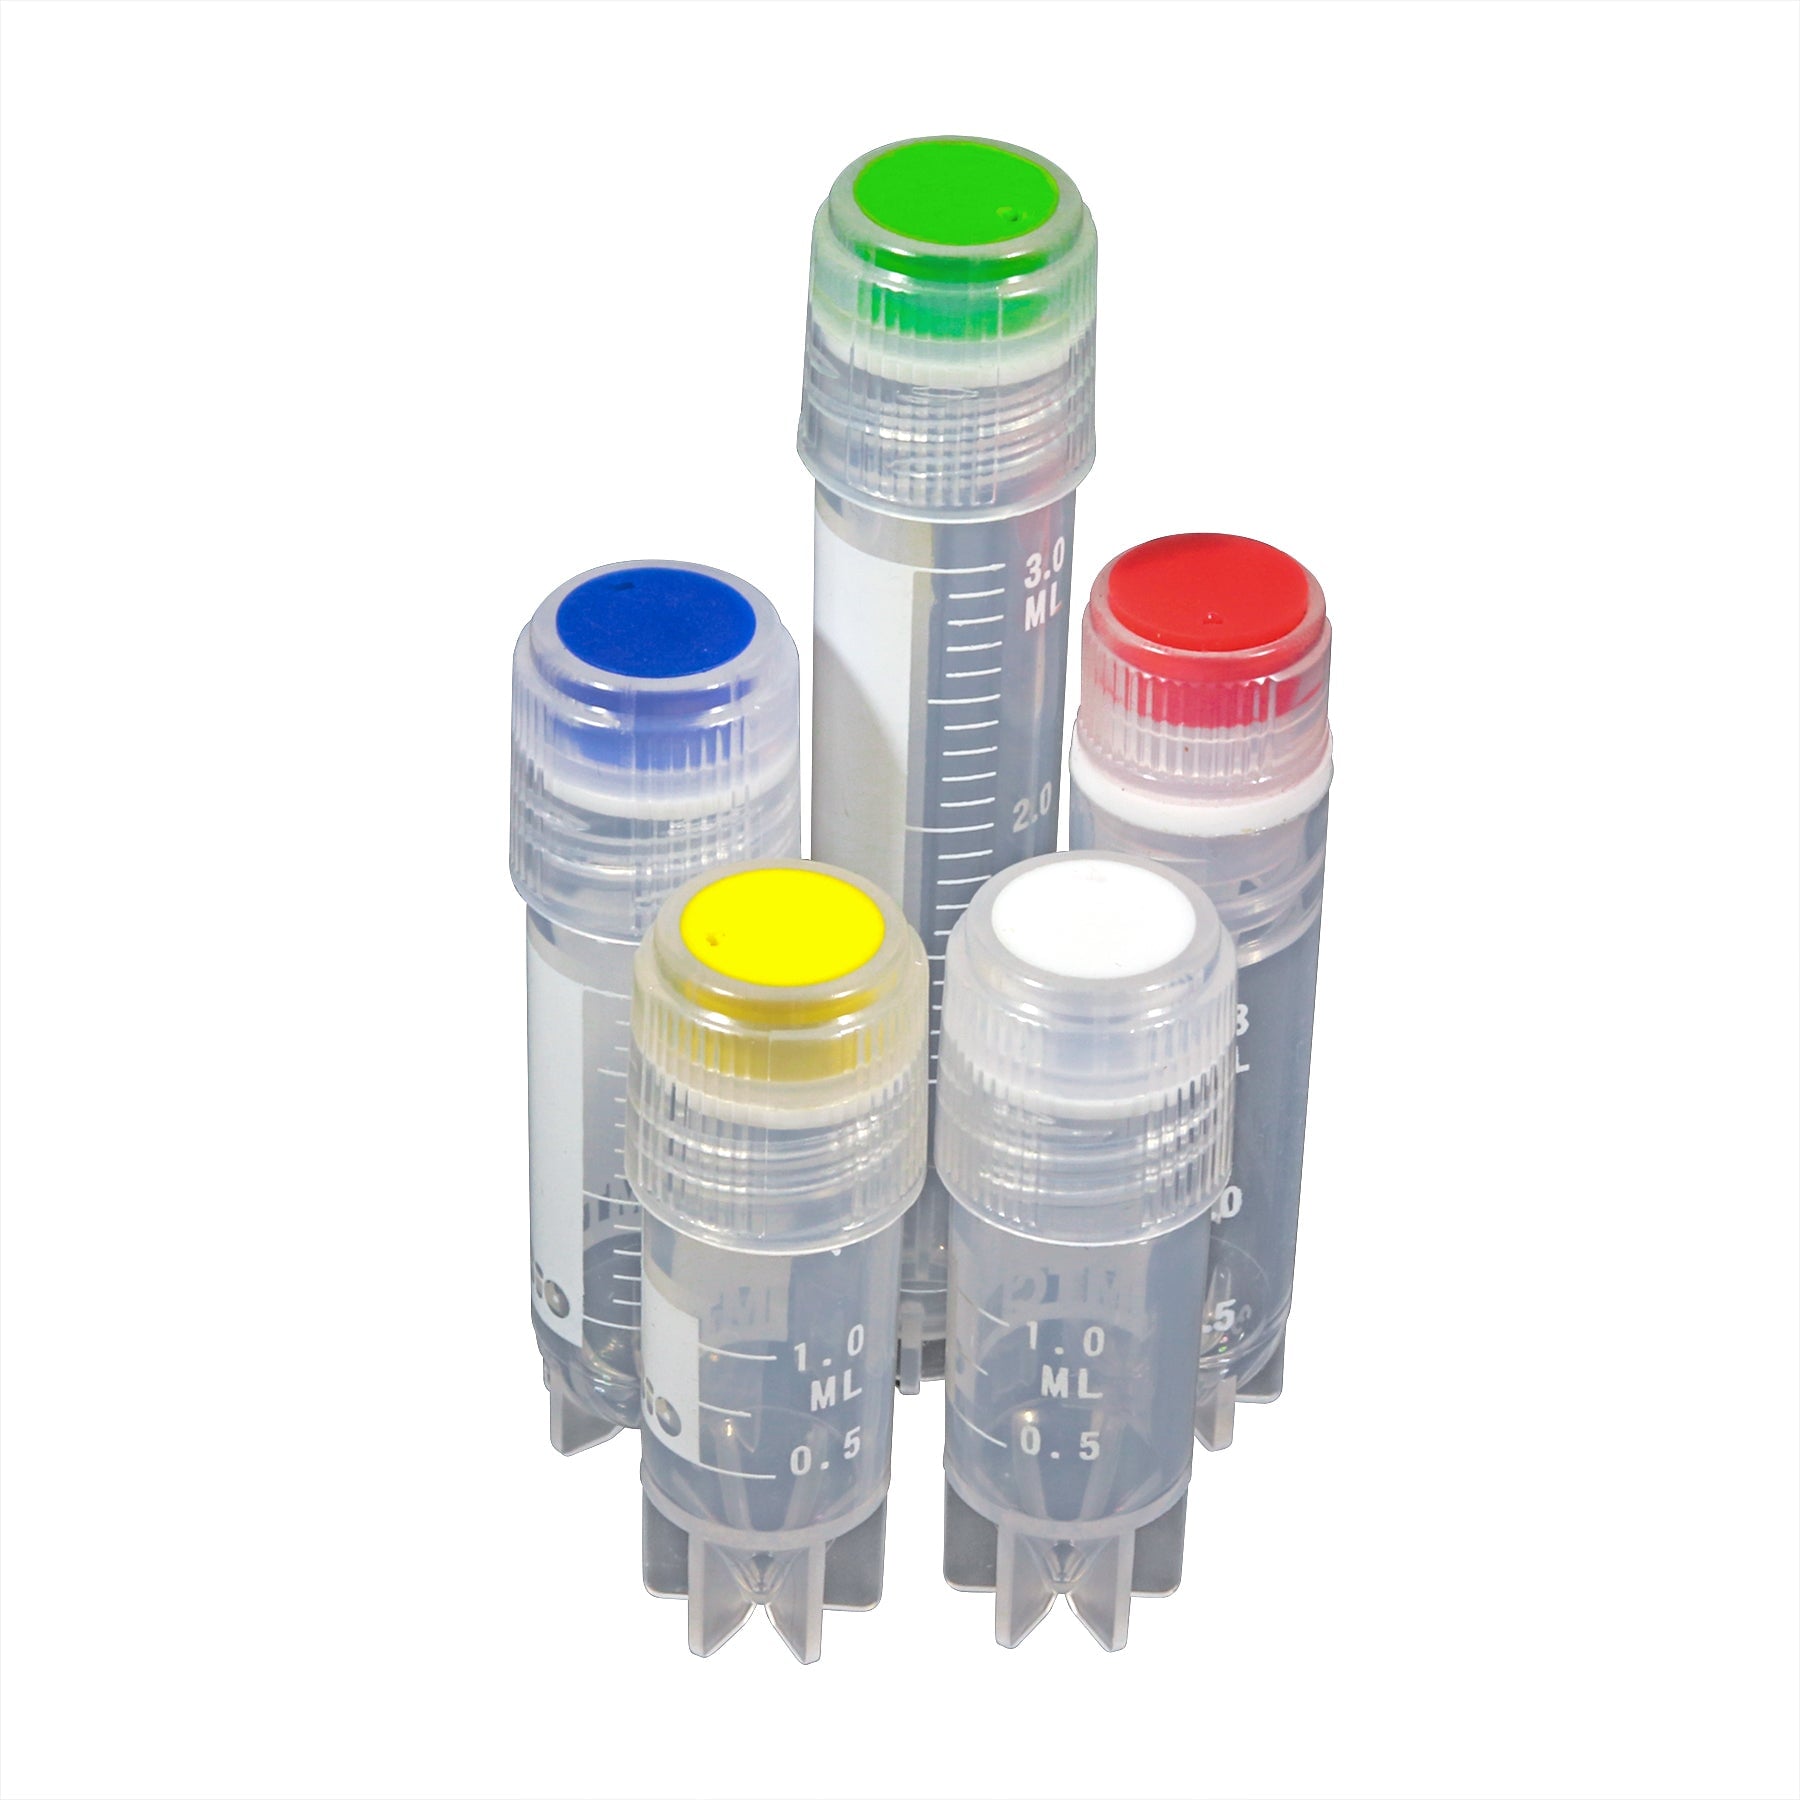 MTC Bio V5809-W Cap inserts for cryogenic vials, white, 500/pk